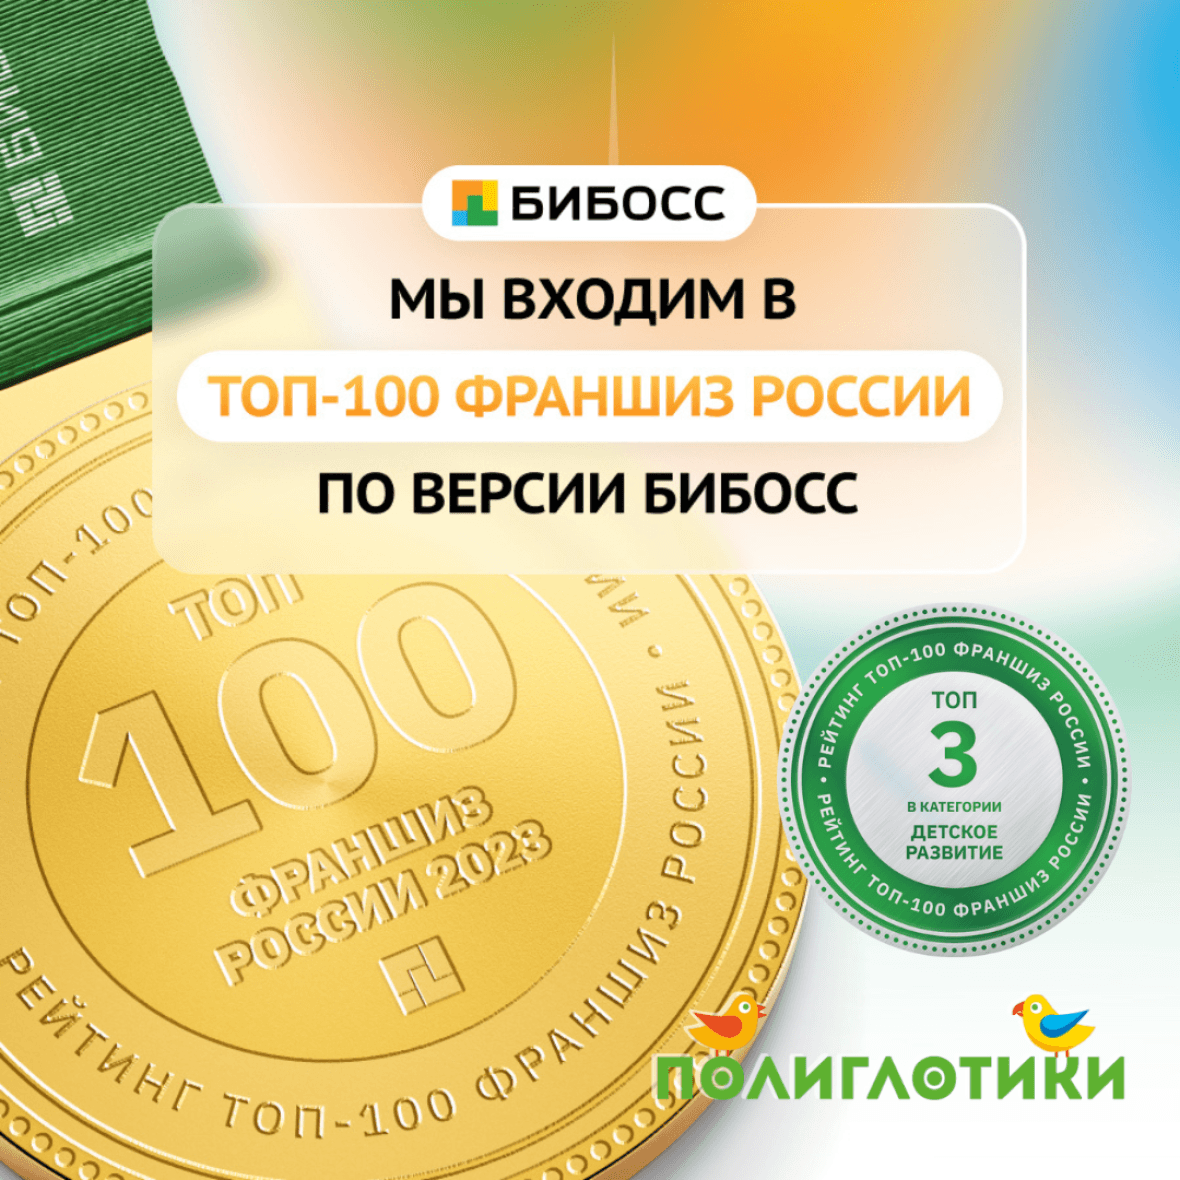 Полиглотики в ТОП-100 лучших франшиз России БИБОСС 2023 года и в тройке лидеров в категории «Детское развитие»